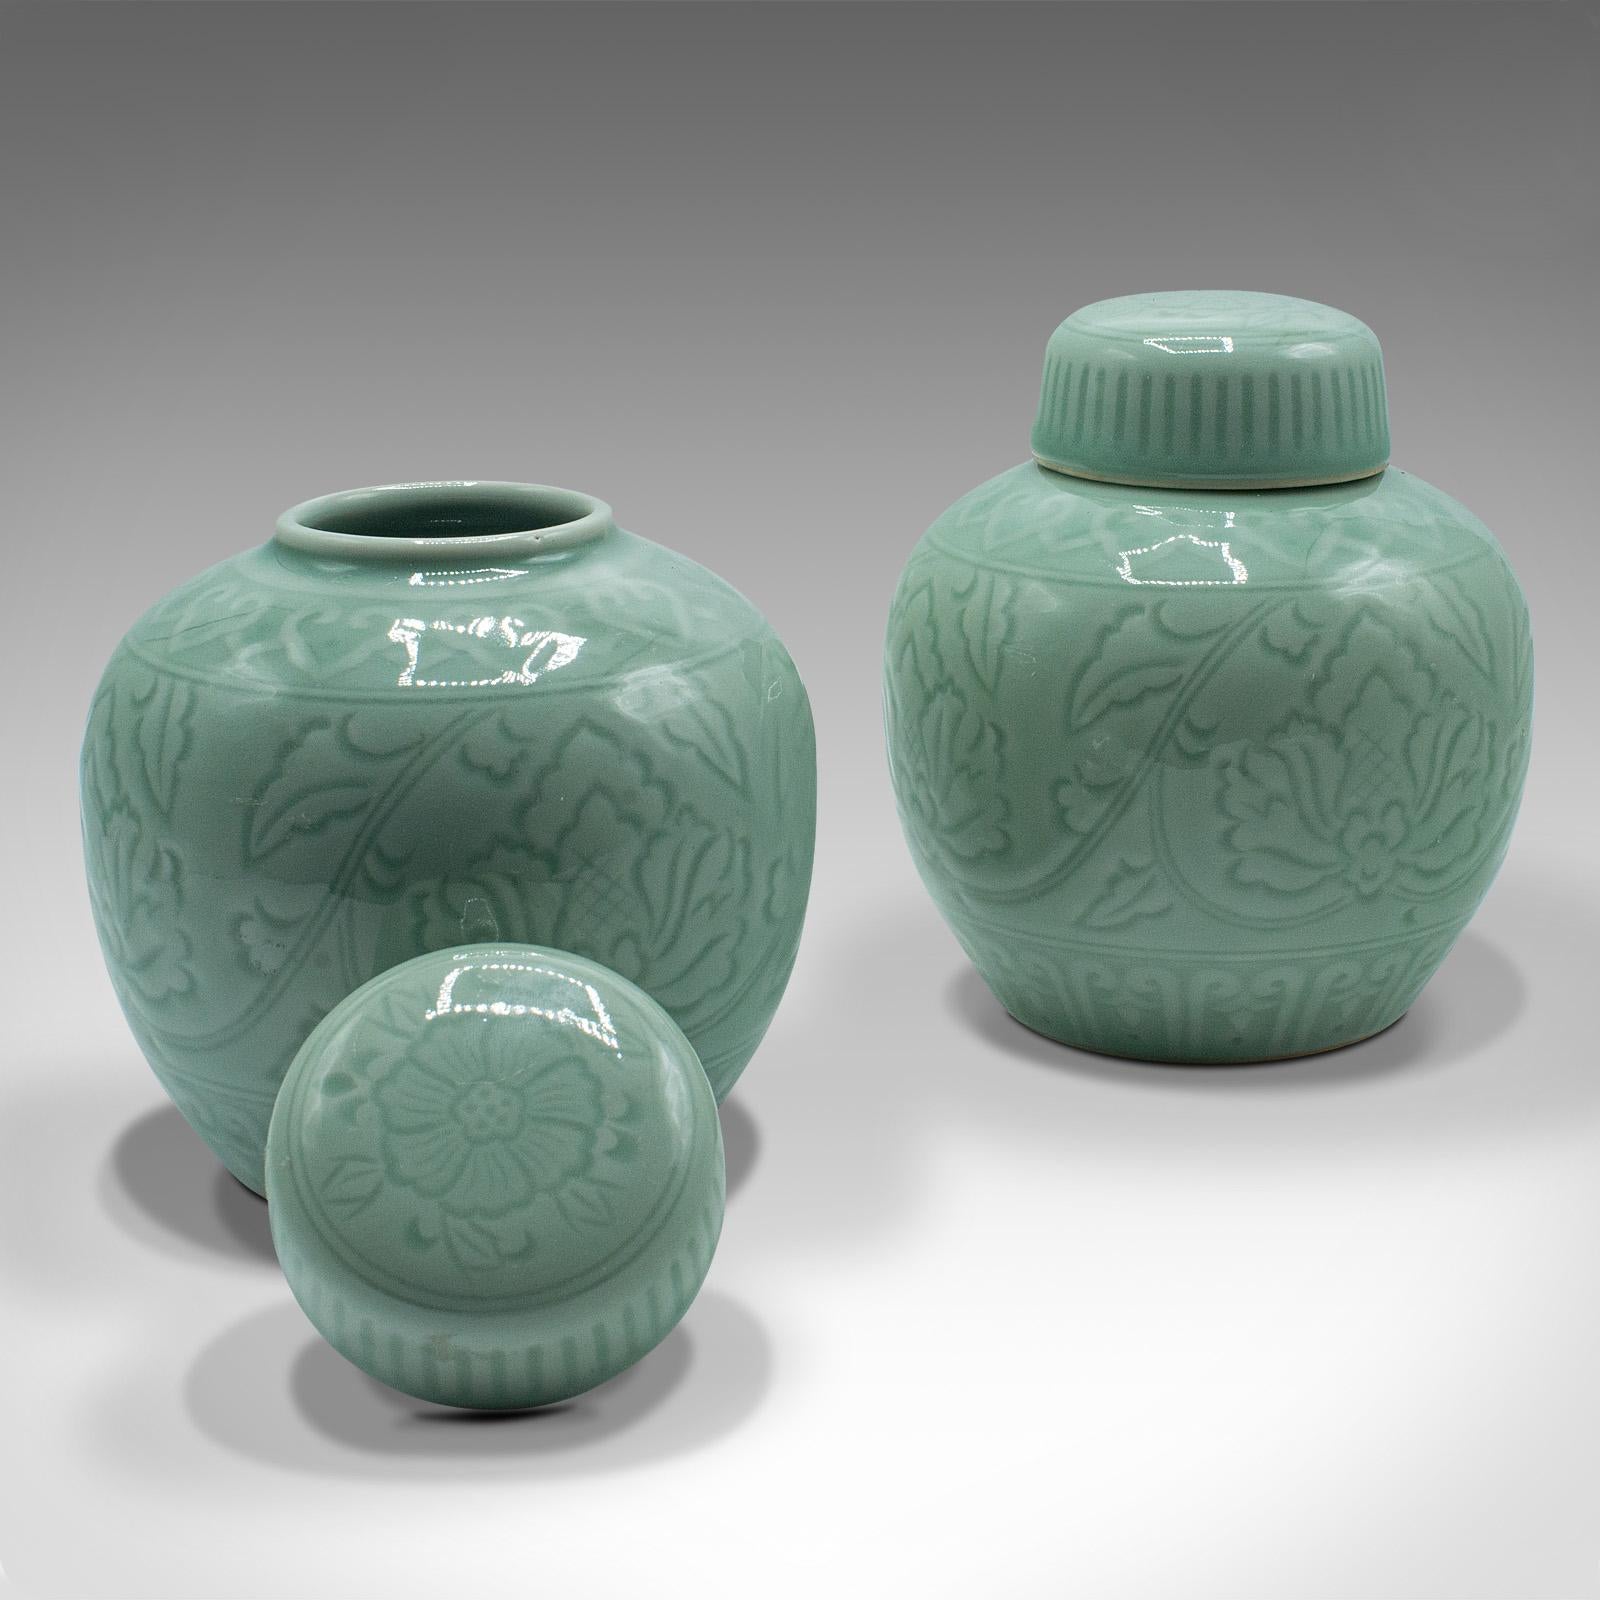 Il s'agit d'une paire de pots à épices décoratifs anciens. Pot chinois en céramique céladon, datant de la fin de la période victorienne, vers 1900.

Une forme délicieuse avec de merveilleuses teintes vertes céladon
Présente une patine d'ancienneté